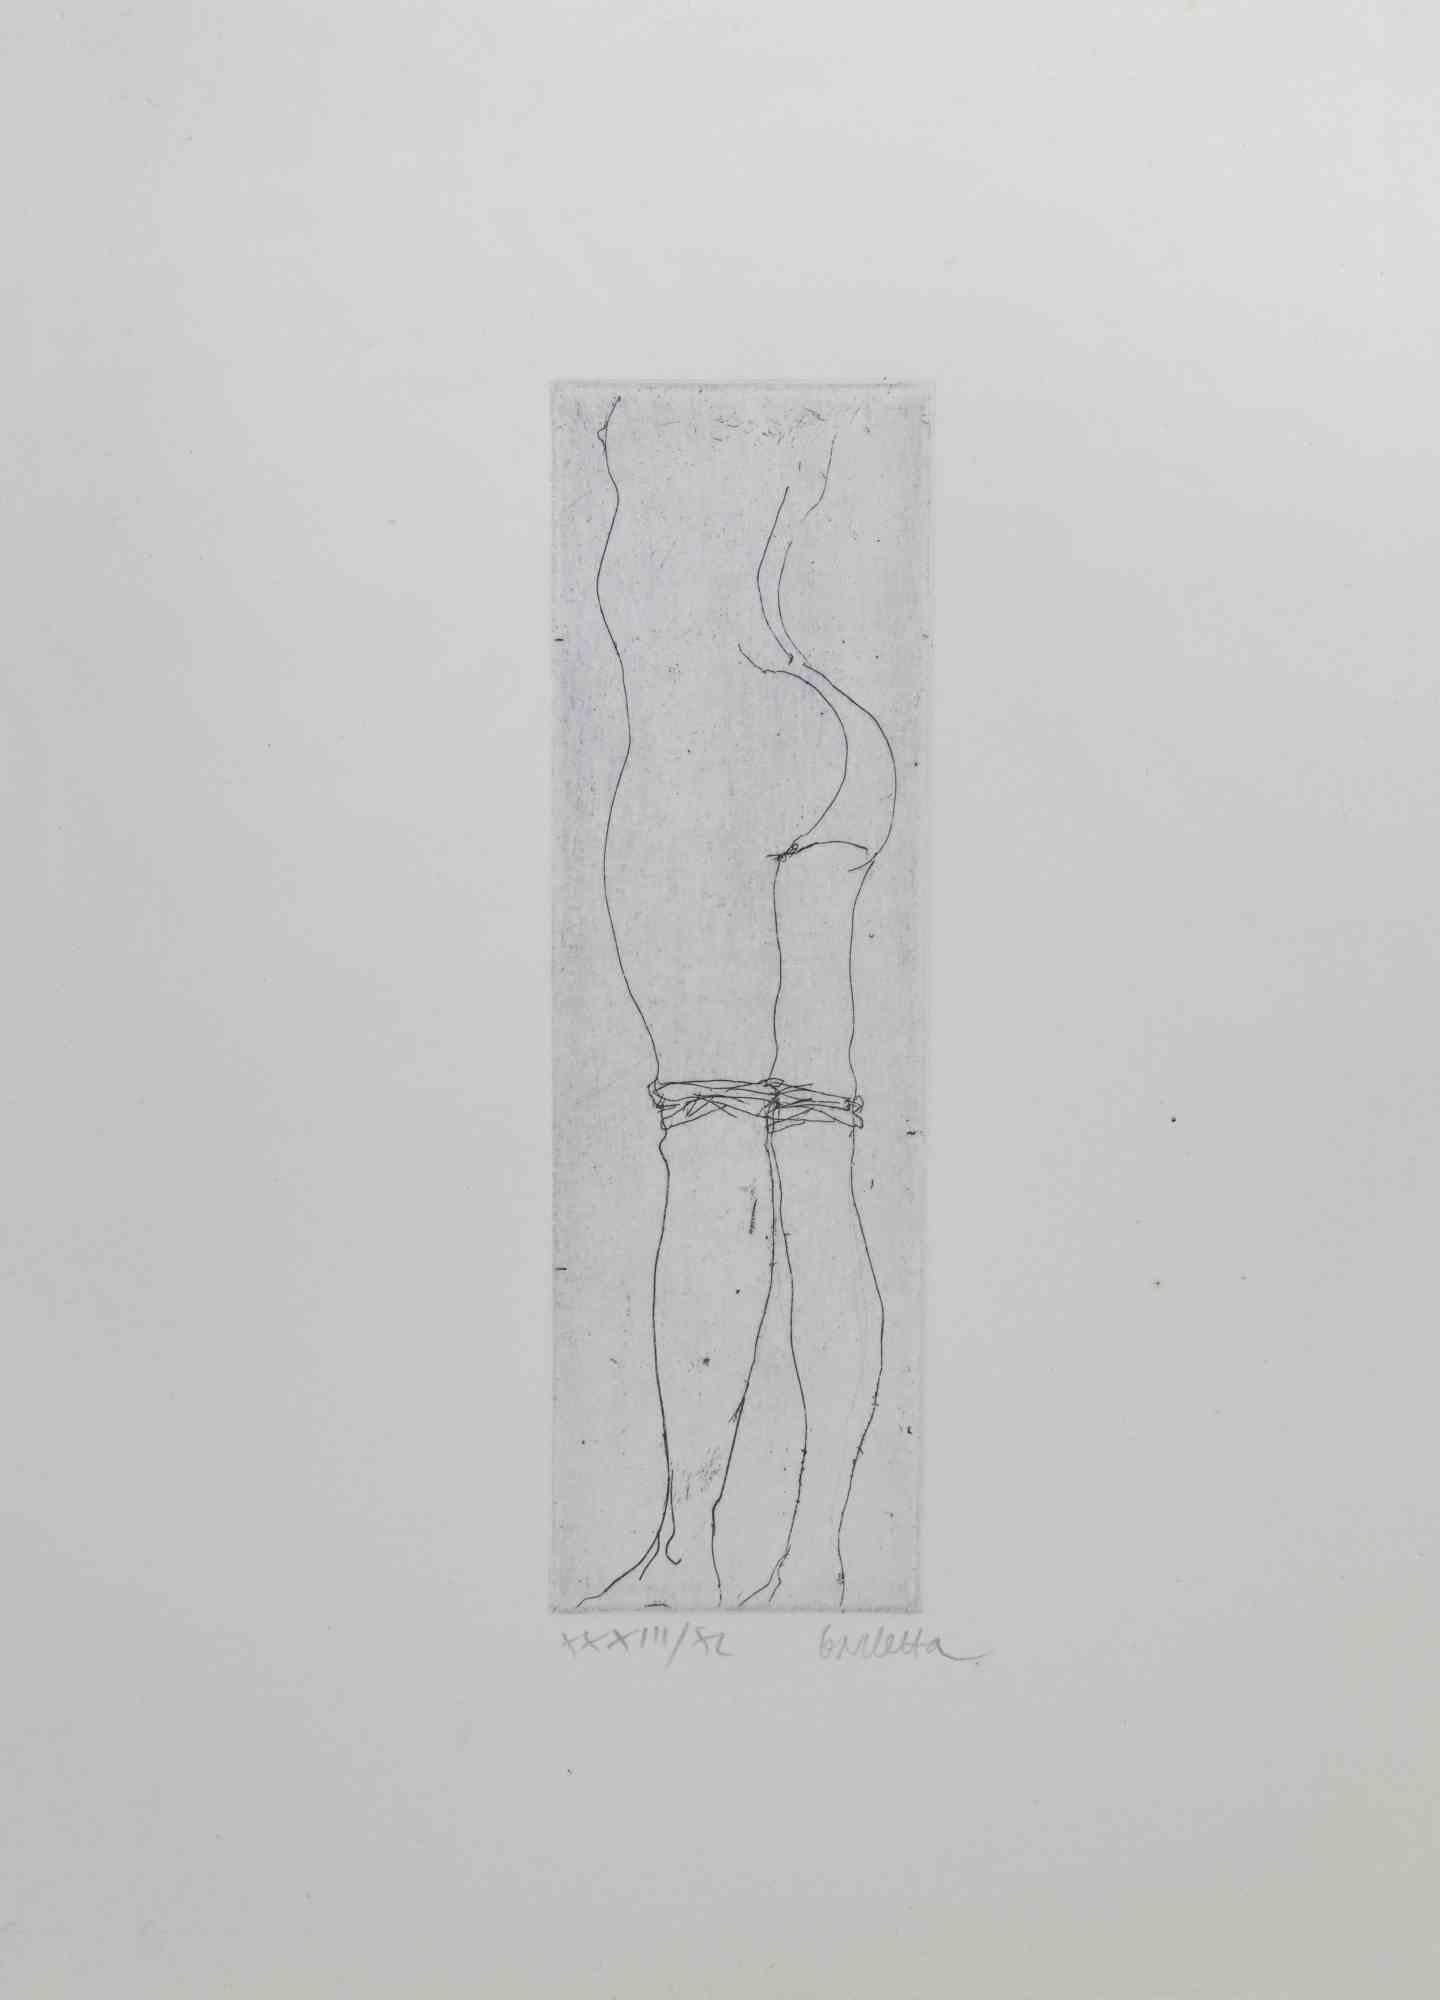 Nude est une gravure sur carton réalisée par Sergio Barletta en 1974. 

dimensions de la feuille, 25 x 17 cm.

Signé au crayon dans la marge inférieure droite.

Edition XXXIII/XL 

Bonnes conditions